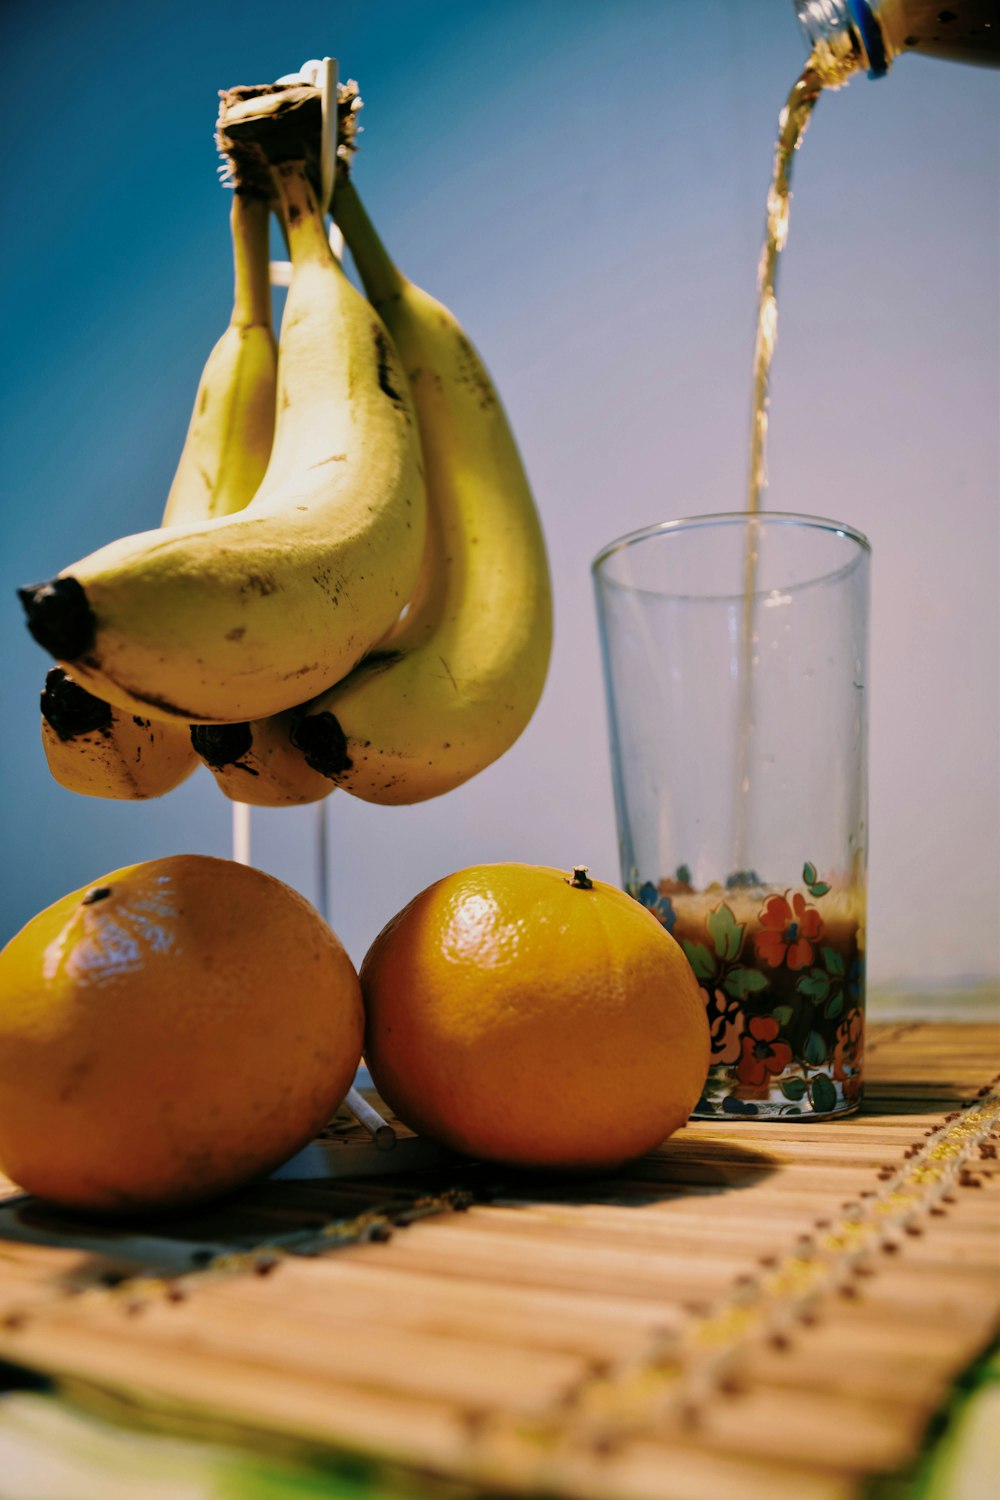 fruta de plátano amarillo al lado de un vaso transparente